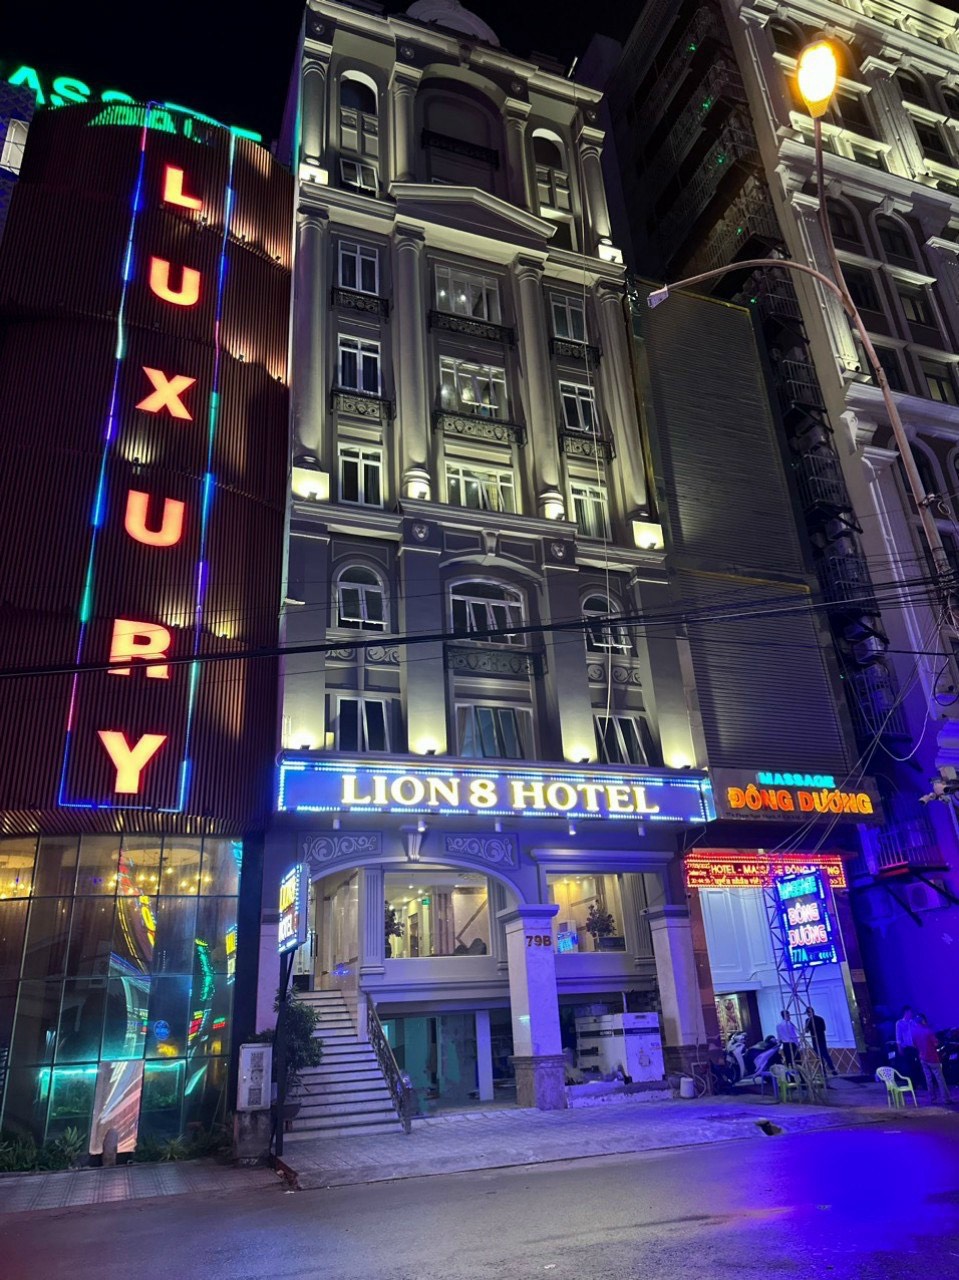 Khách sạn Lion 8 Hotel